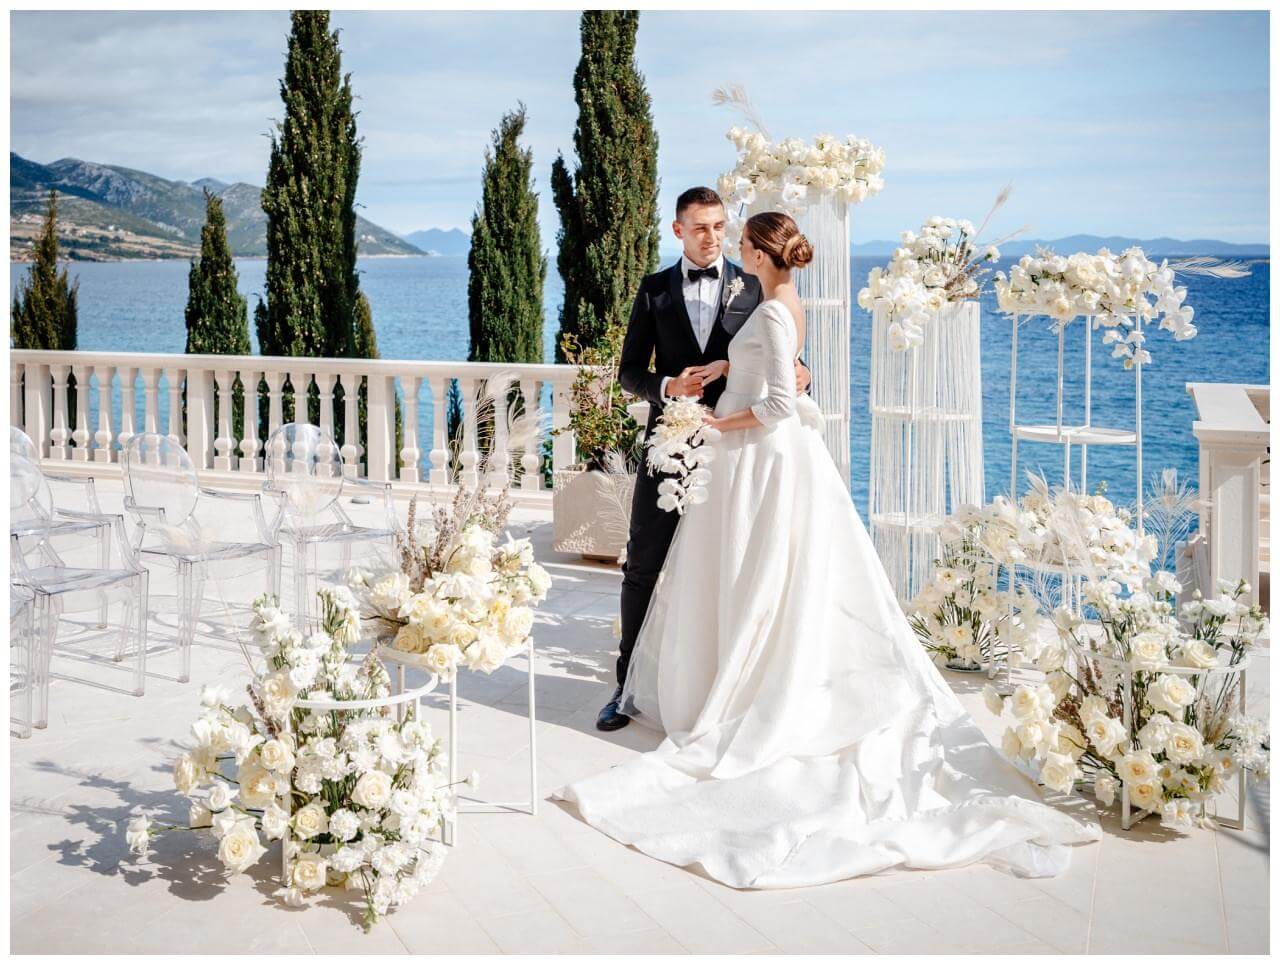 Luxus Hochzeit in weiß Brautpaar nach freier Trauung Wedding Kroatien, wedding in croatia,hochzeitsplanerin kroatien, hochzeit in kroatien